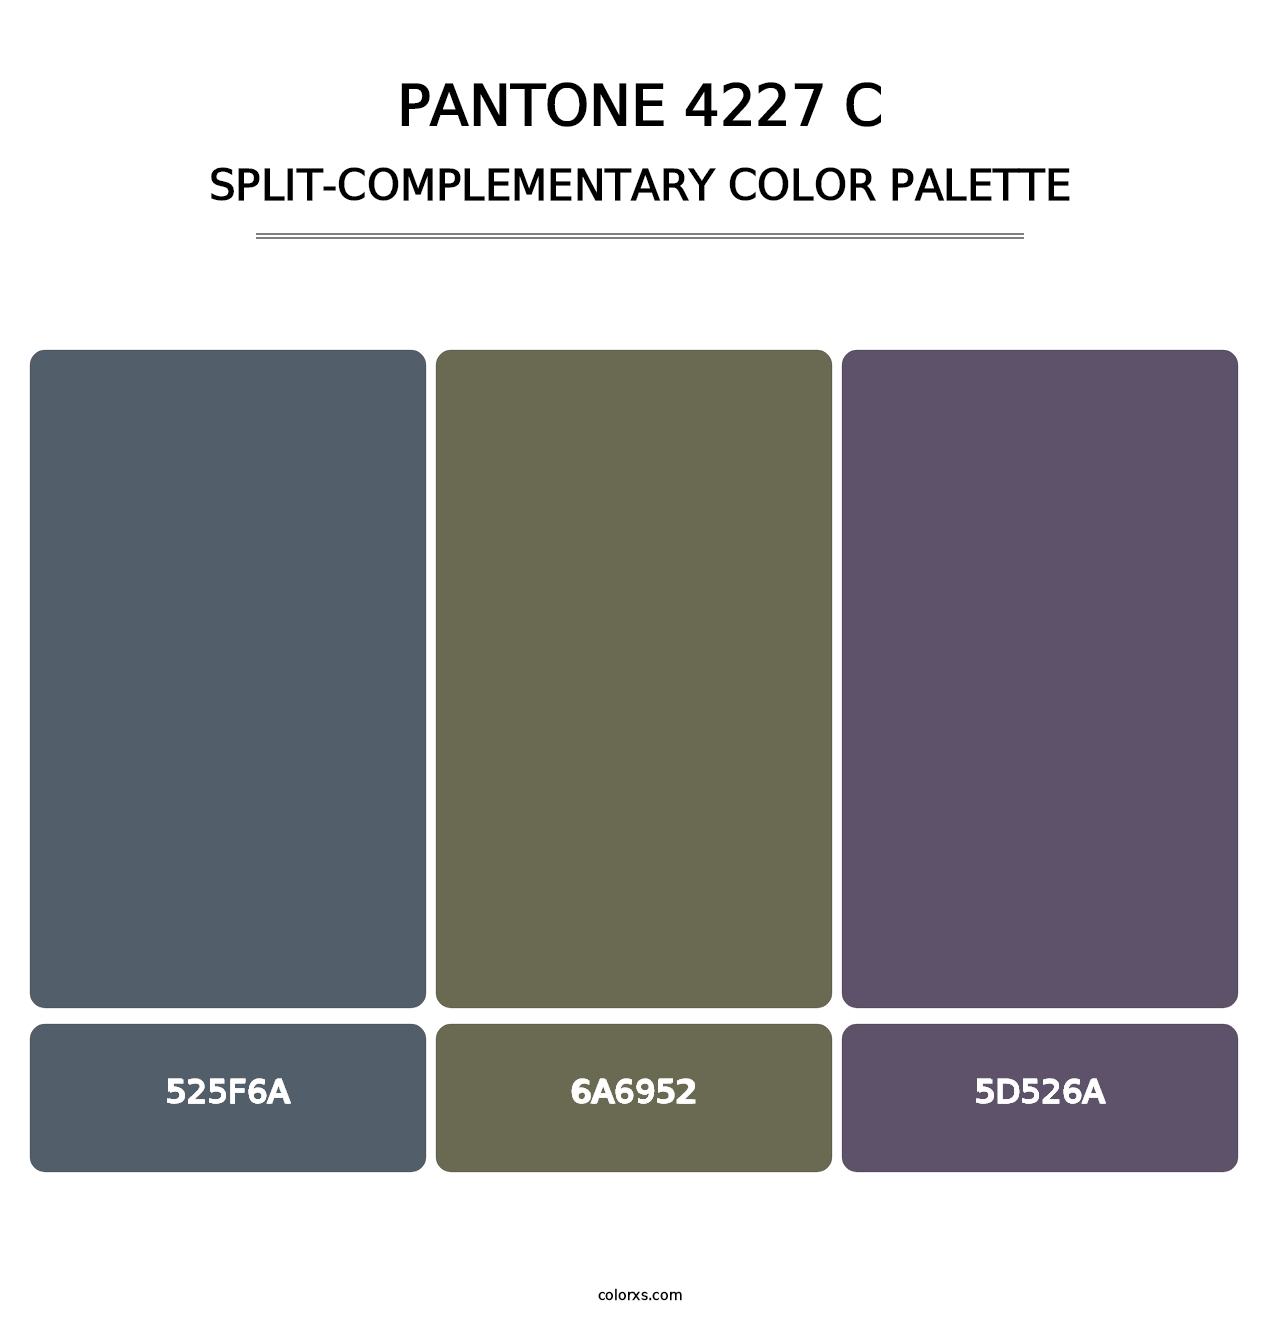 PANTONE 4227 C - Split-Complementary Color Palette